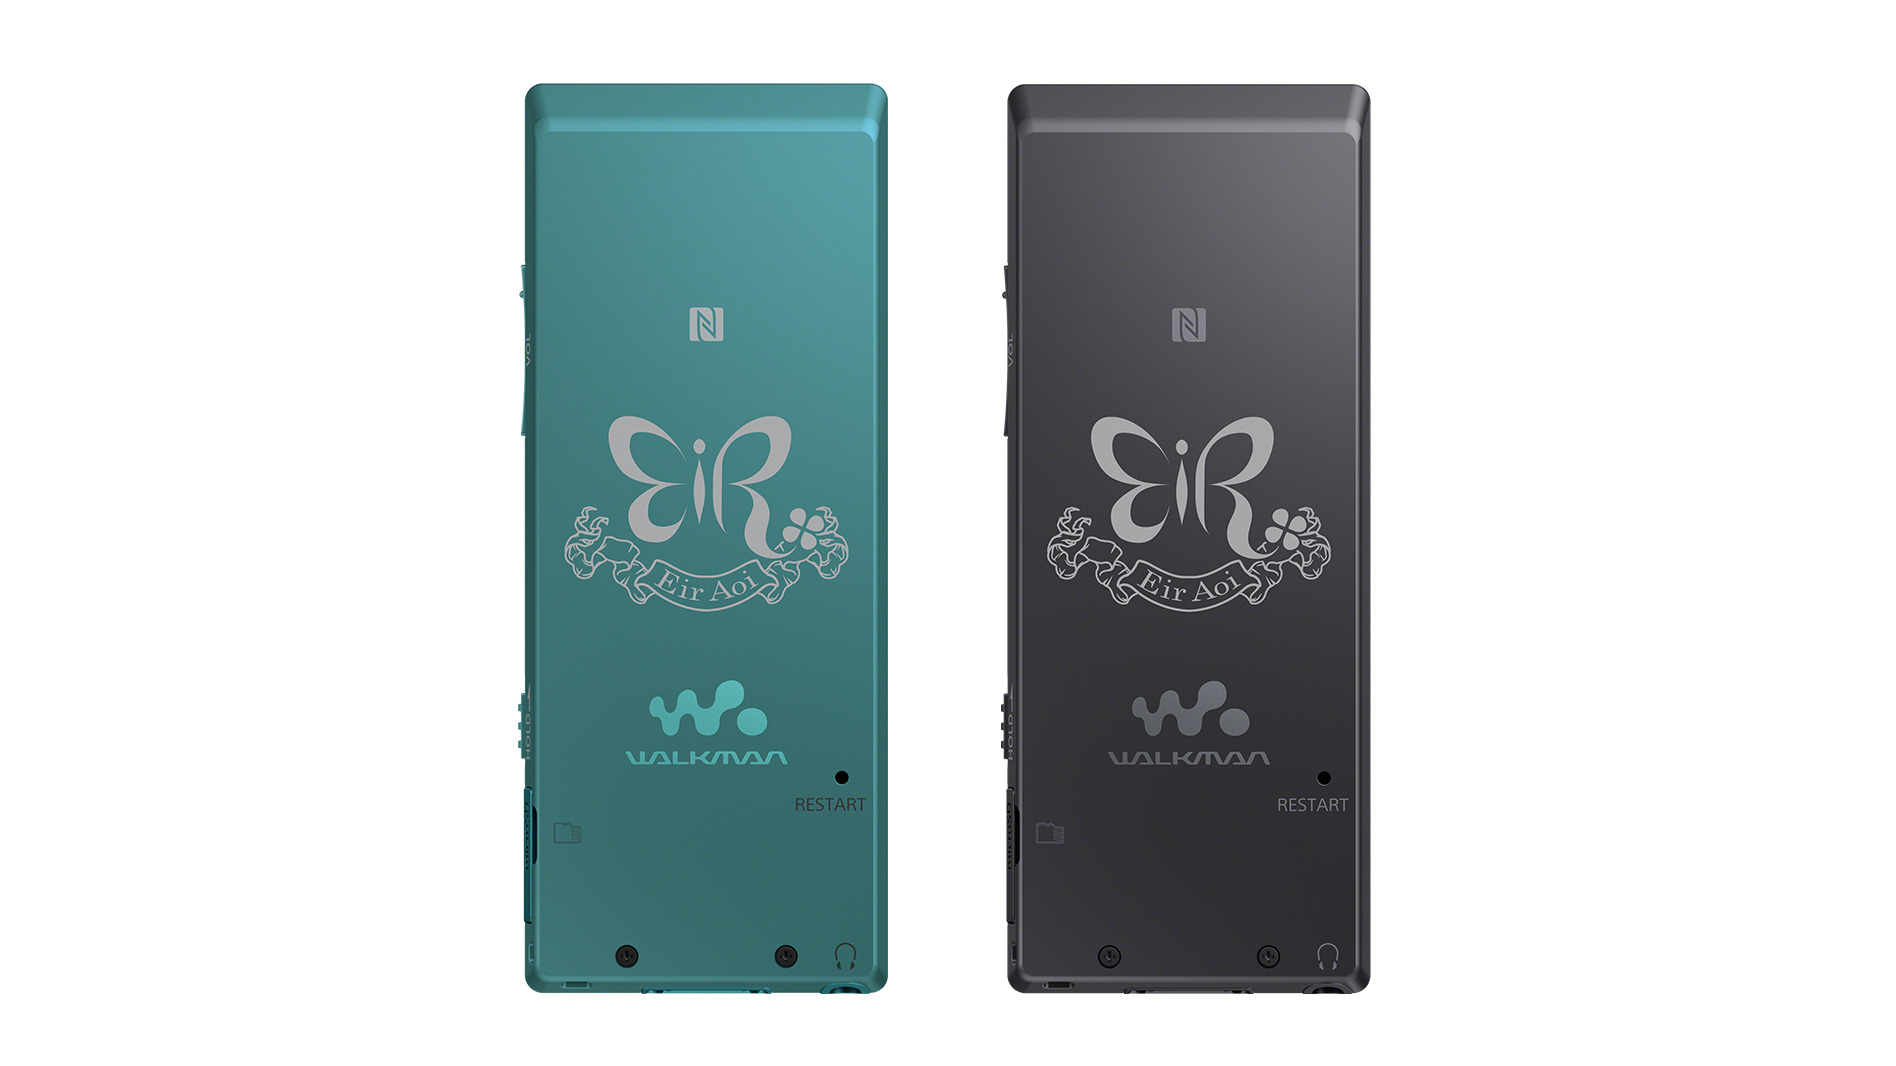 ウォークマン Aシリーズ Nw 5hn 藍井エイルモデル ポータブルオーディオプレーヤー Walkman ウォークマン ソニー